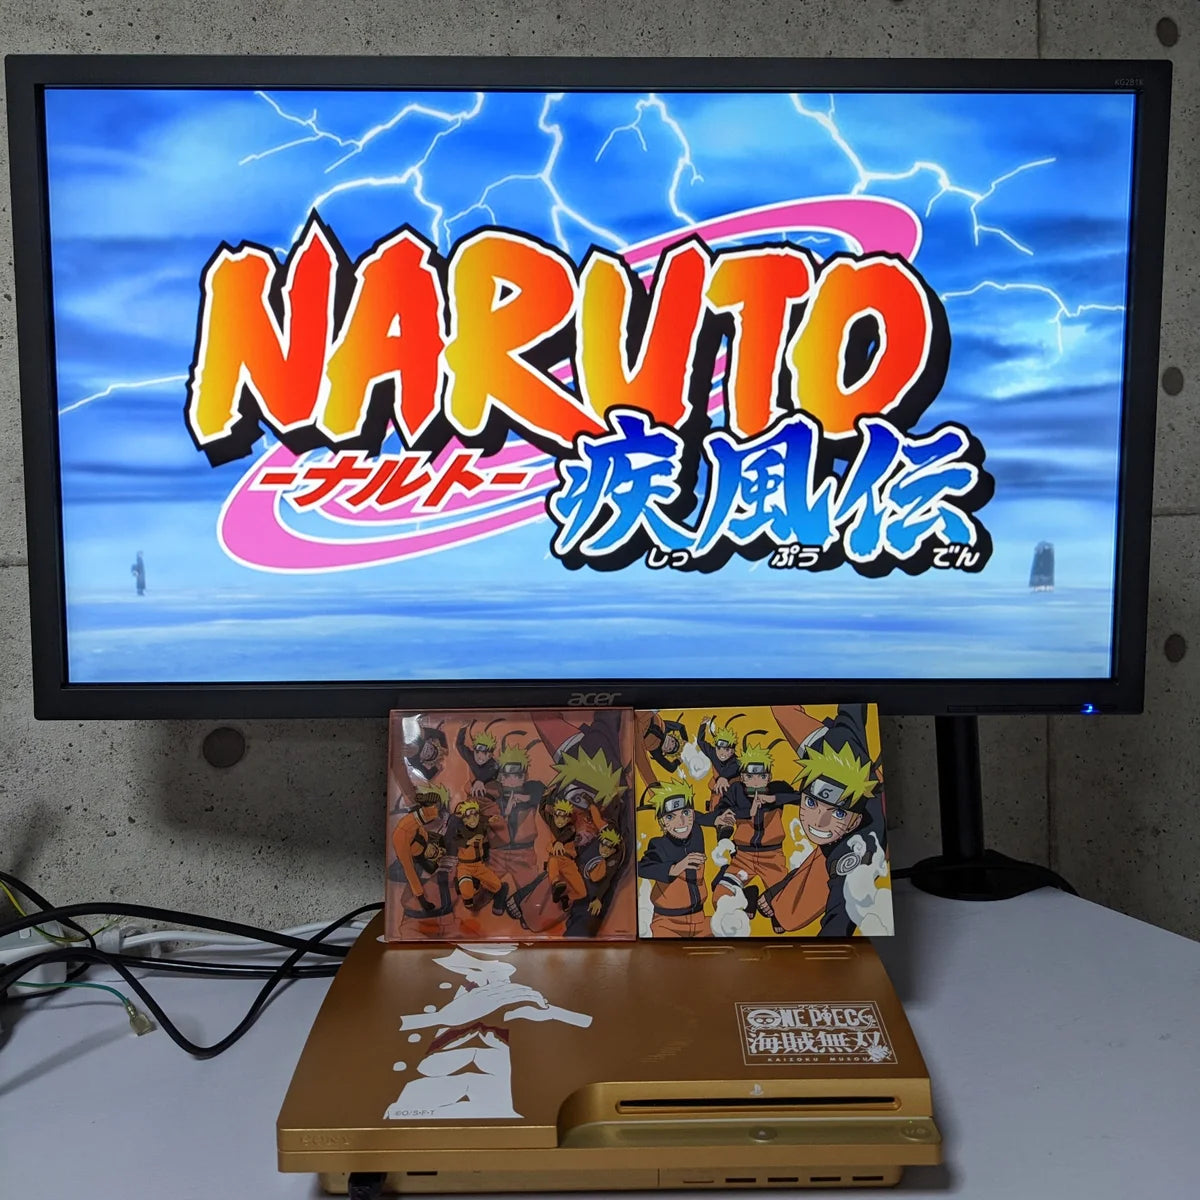 Naruto Greatest Hits !!!